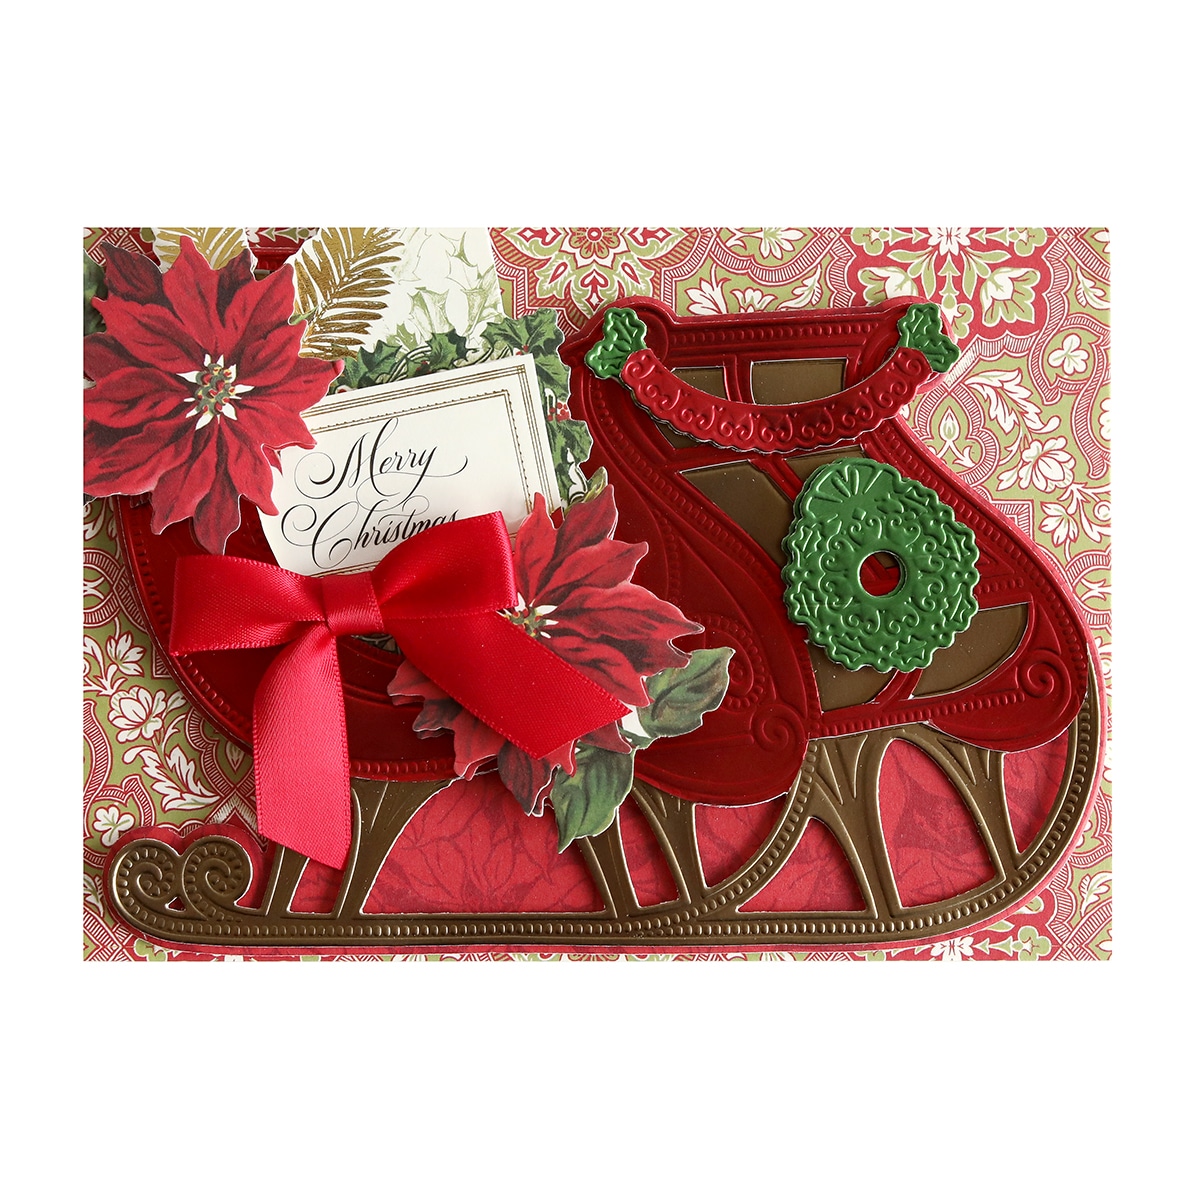 A christmas card with a sleigh and poinsettias.